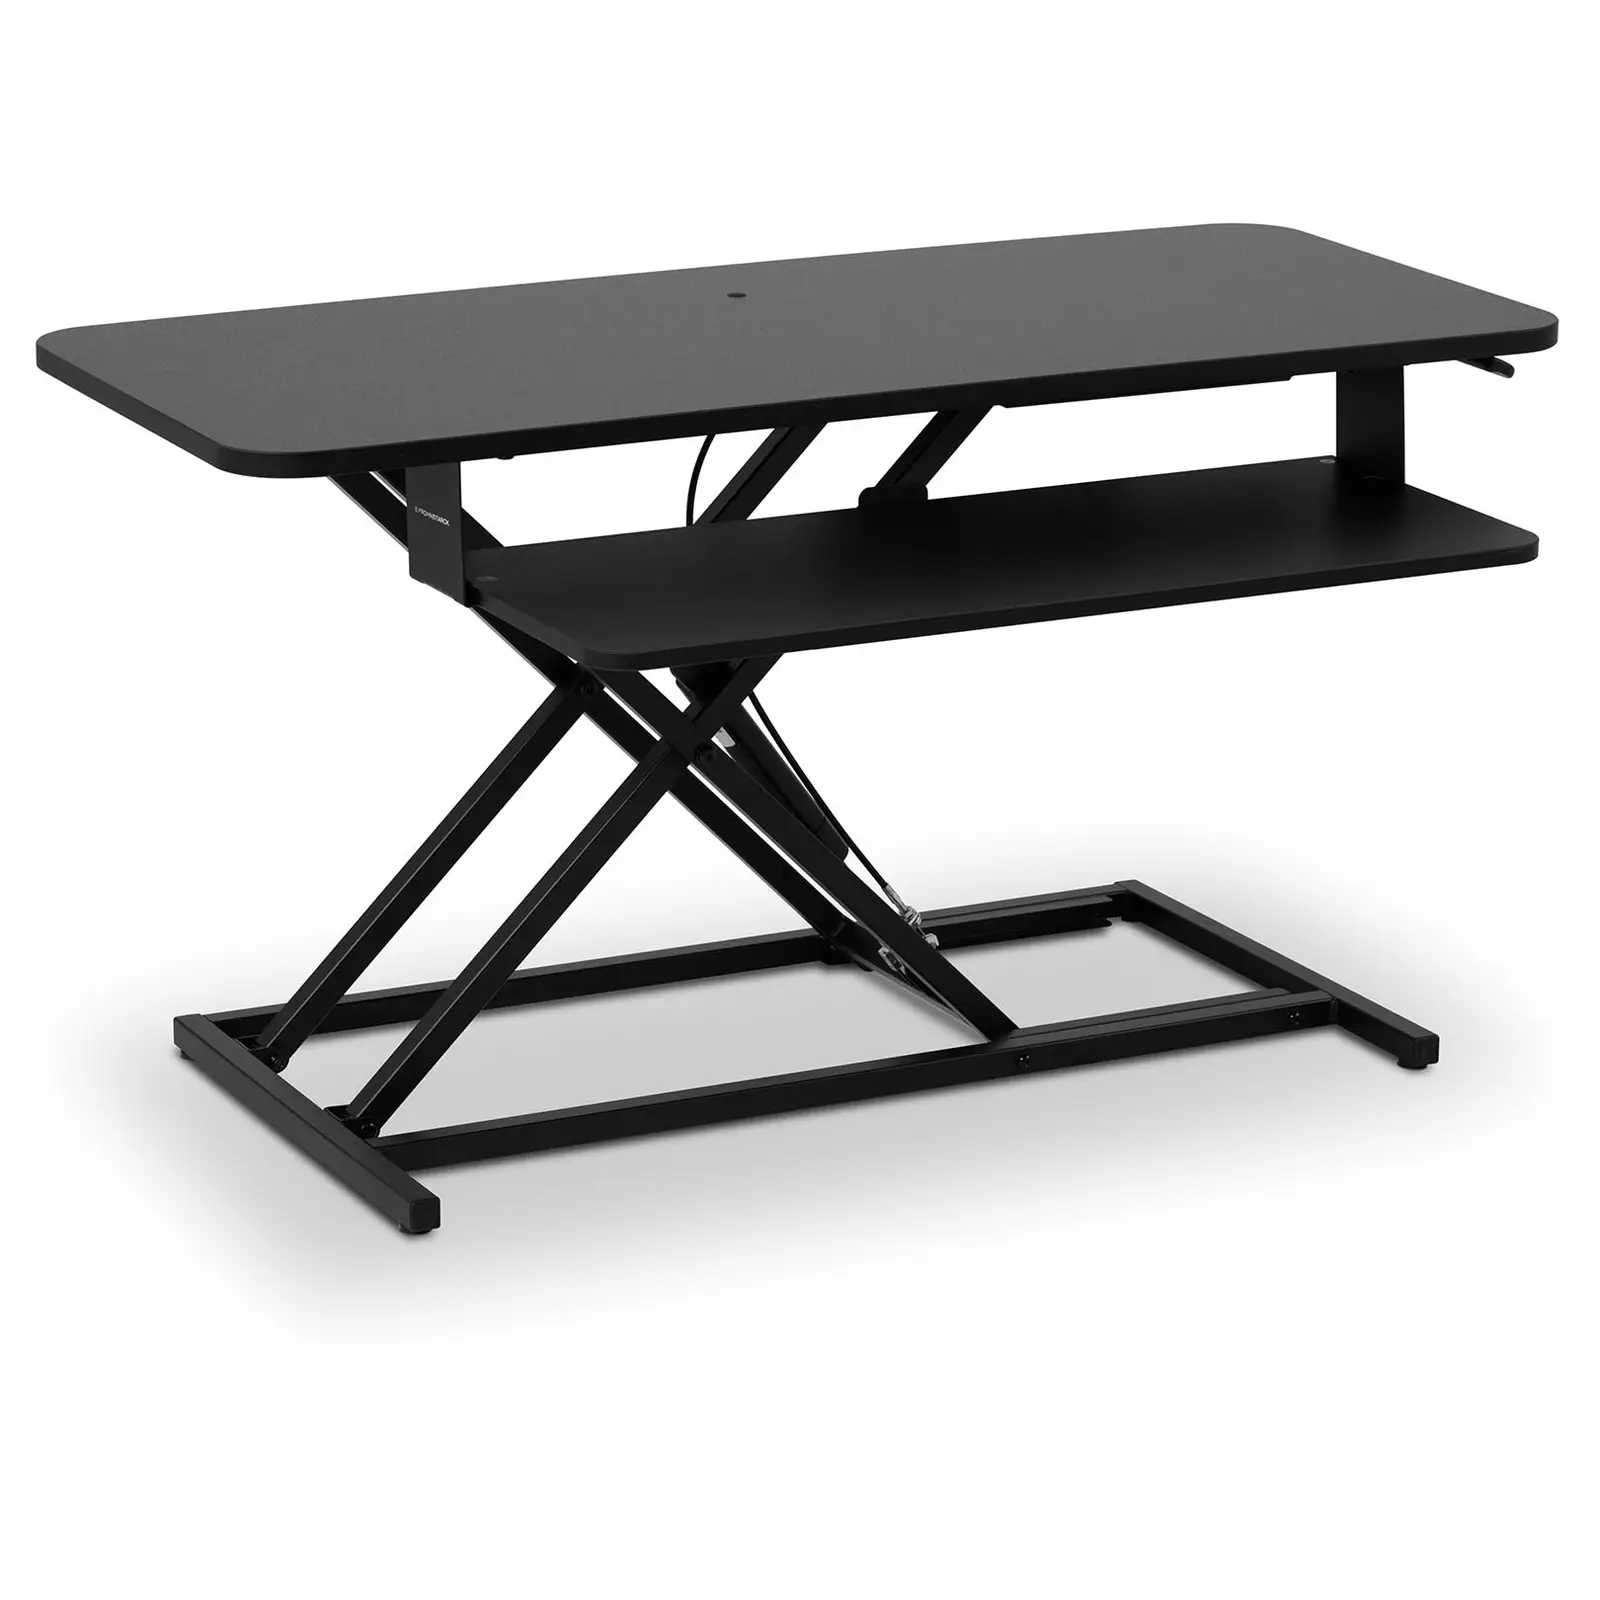 Elevador de escritorio - trabajo de pie y sentado - regulable en altura 115 - 500 mm